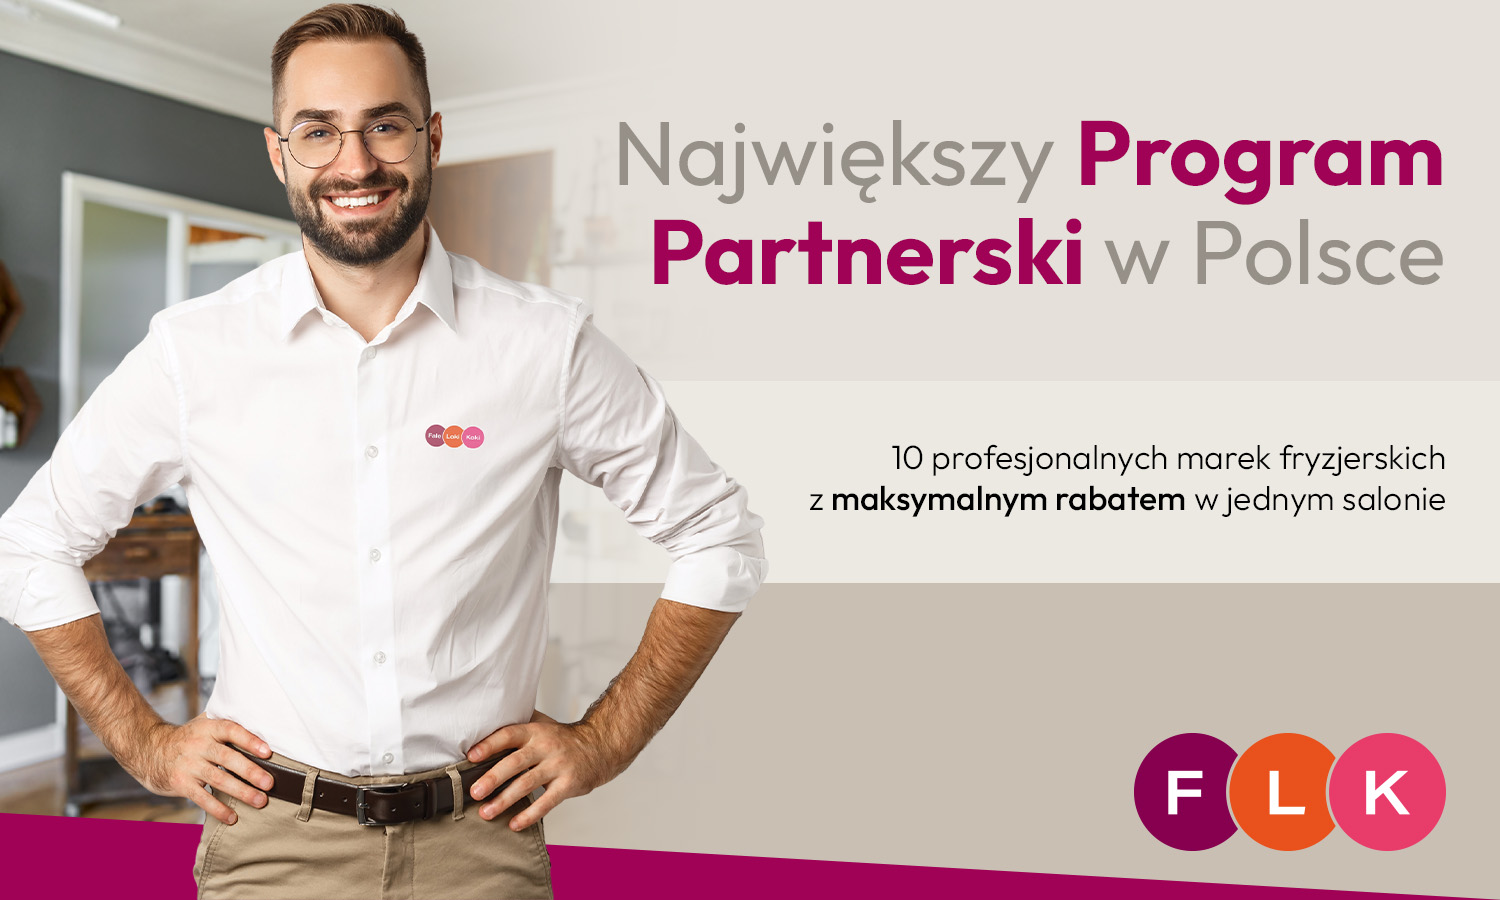 Największy Program Partnerski w Polsce. 10 profesjonalnych marek fryzjerskich z maksymalnym rabatem w jednym salonie. Bo wiemy, że lubisz mieć wybór